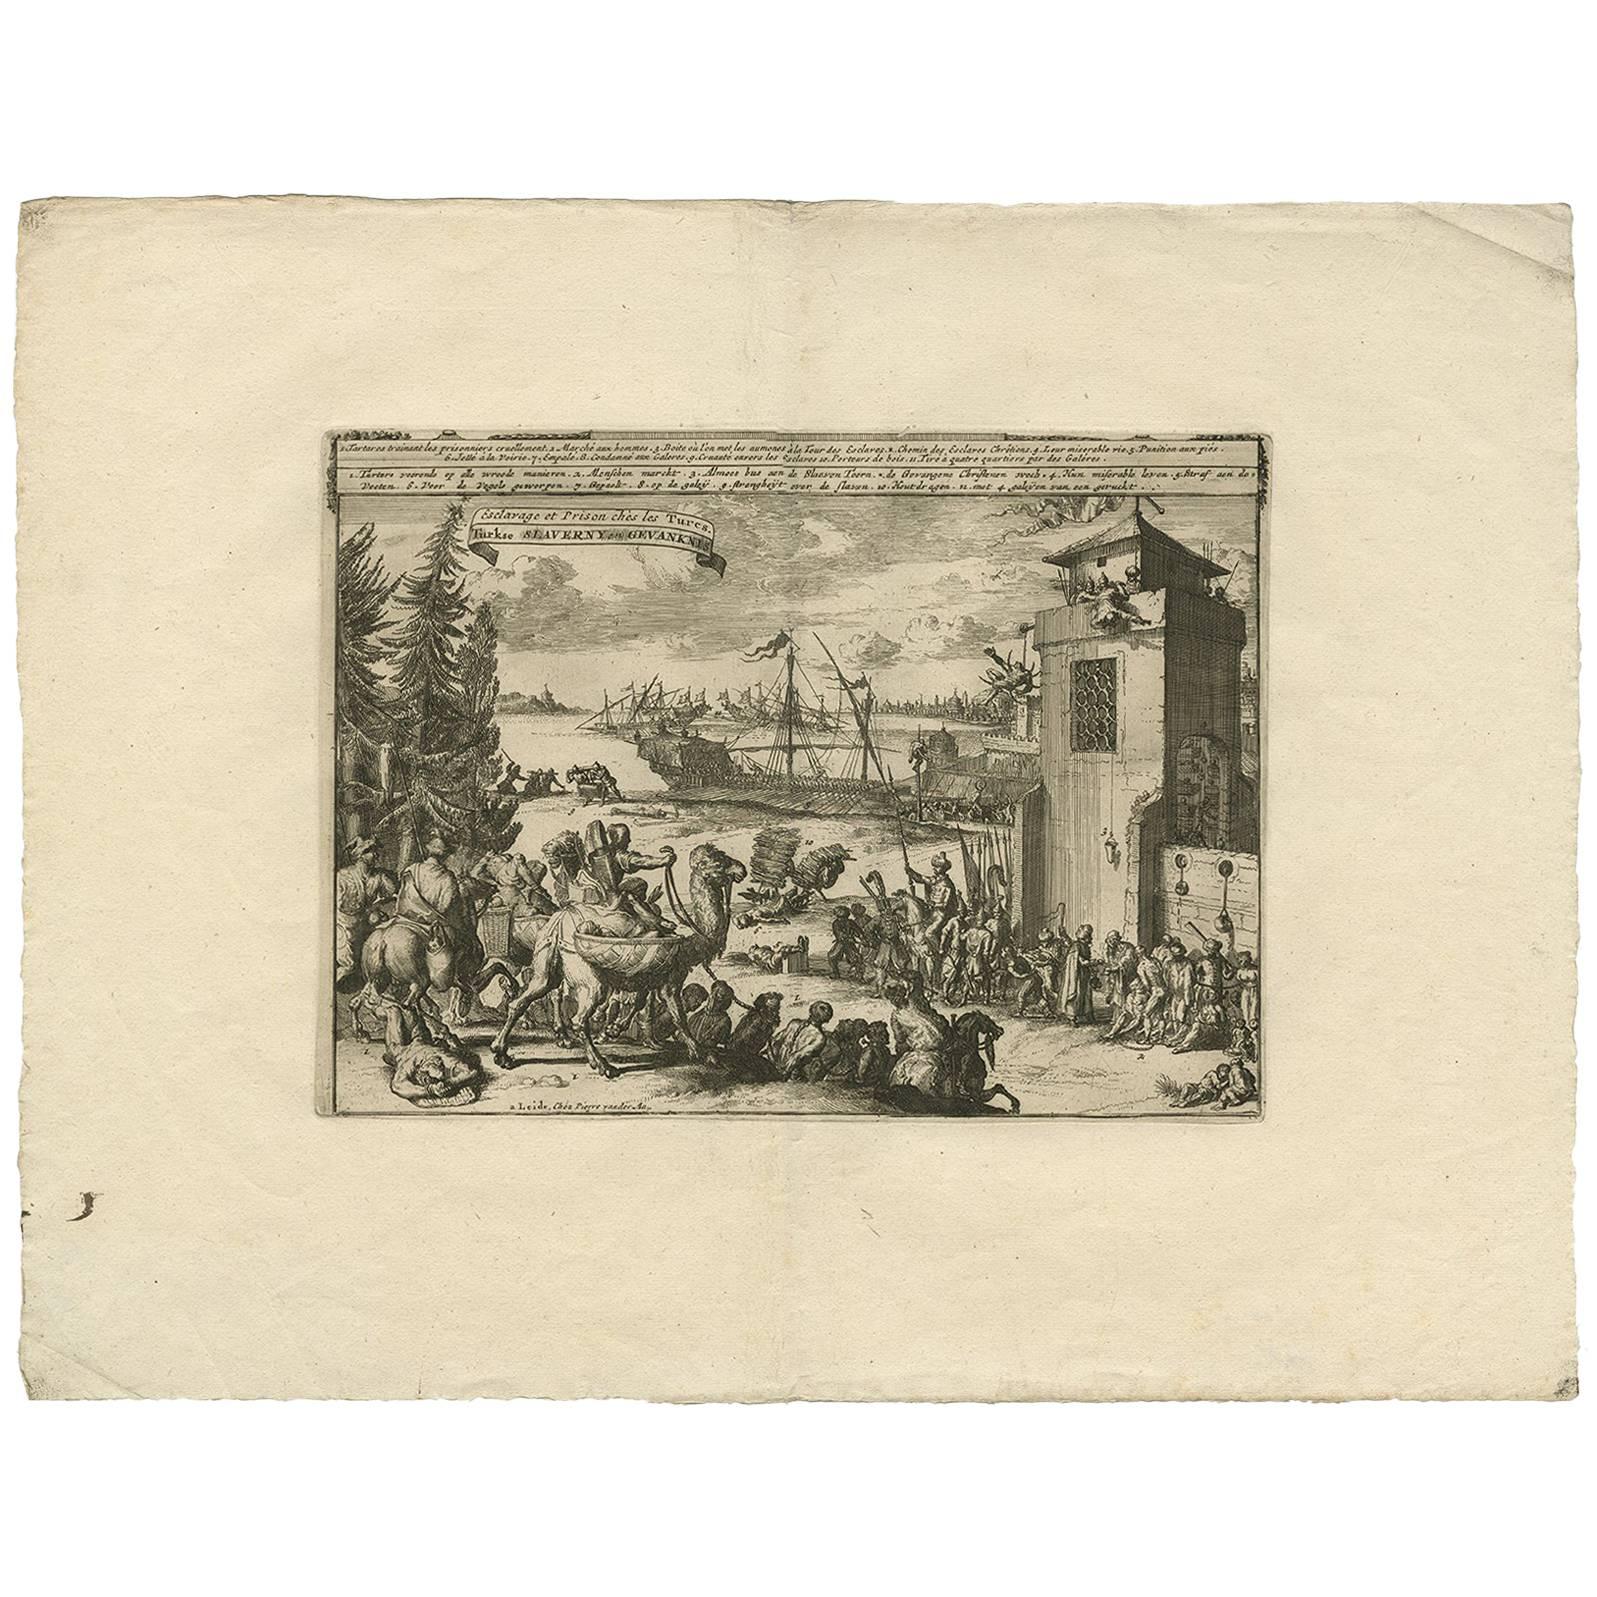 Impression ancienne de l'esclavage et du jail turc par P. van der Aa, vers 1725